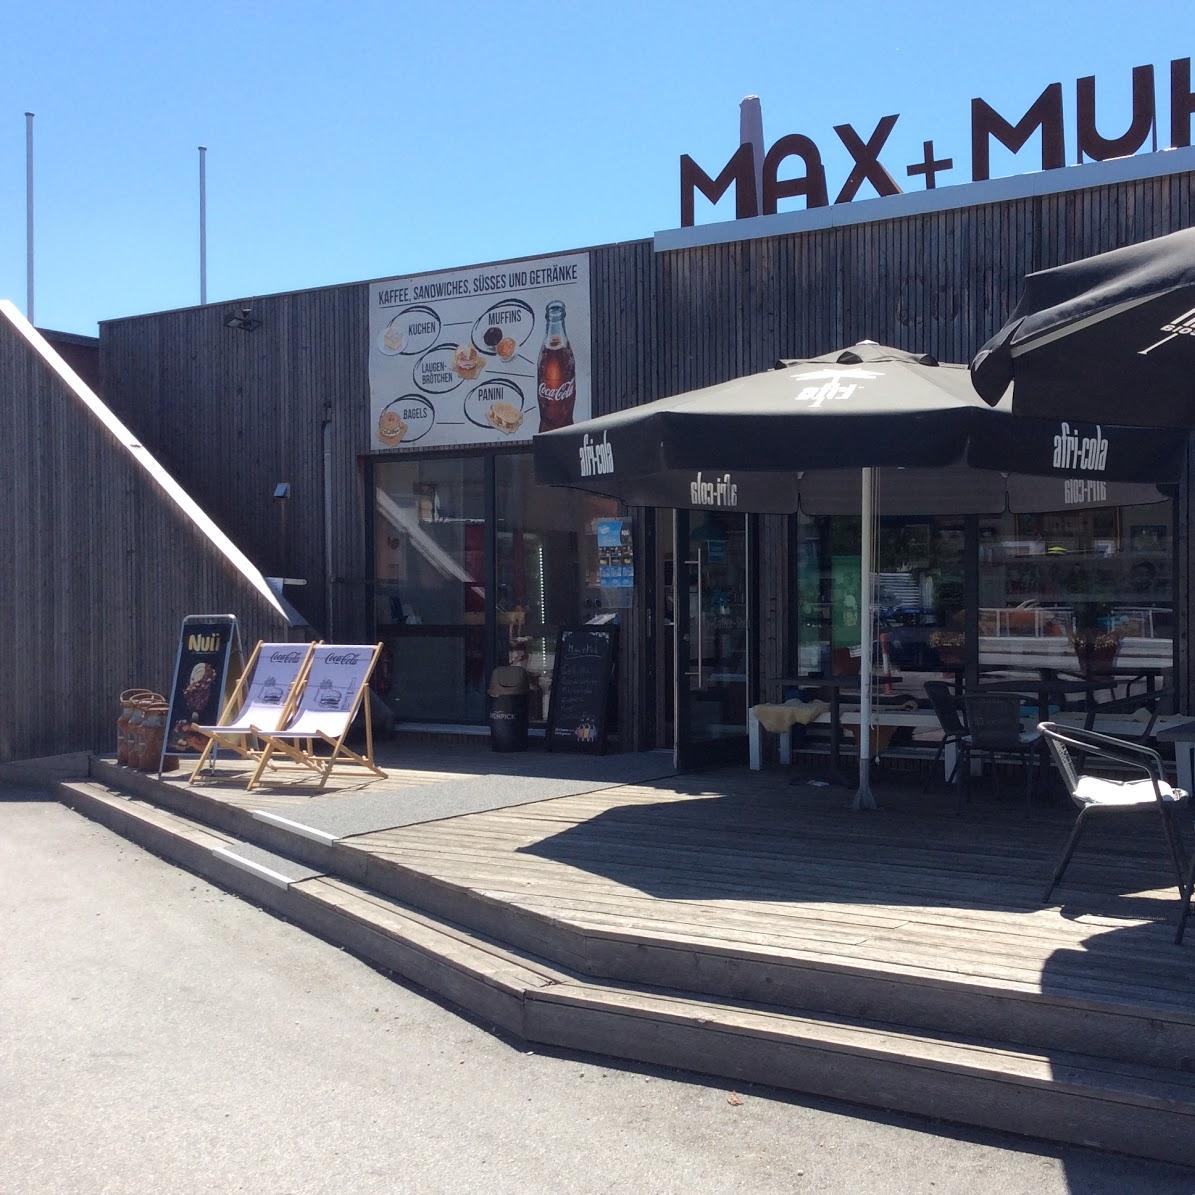 Restaurant "MAX + MUH" in Deggendorf